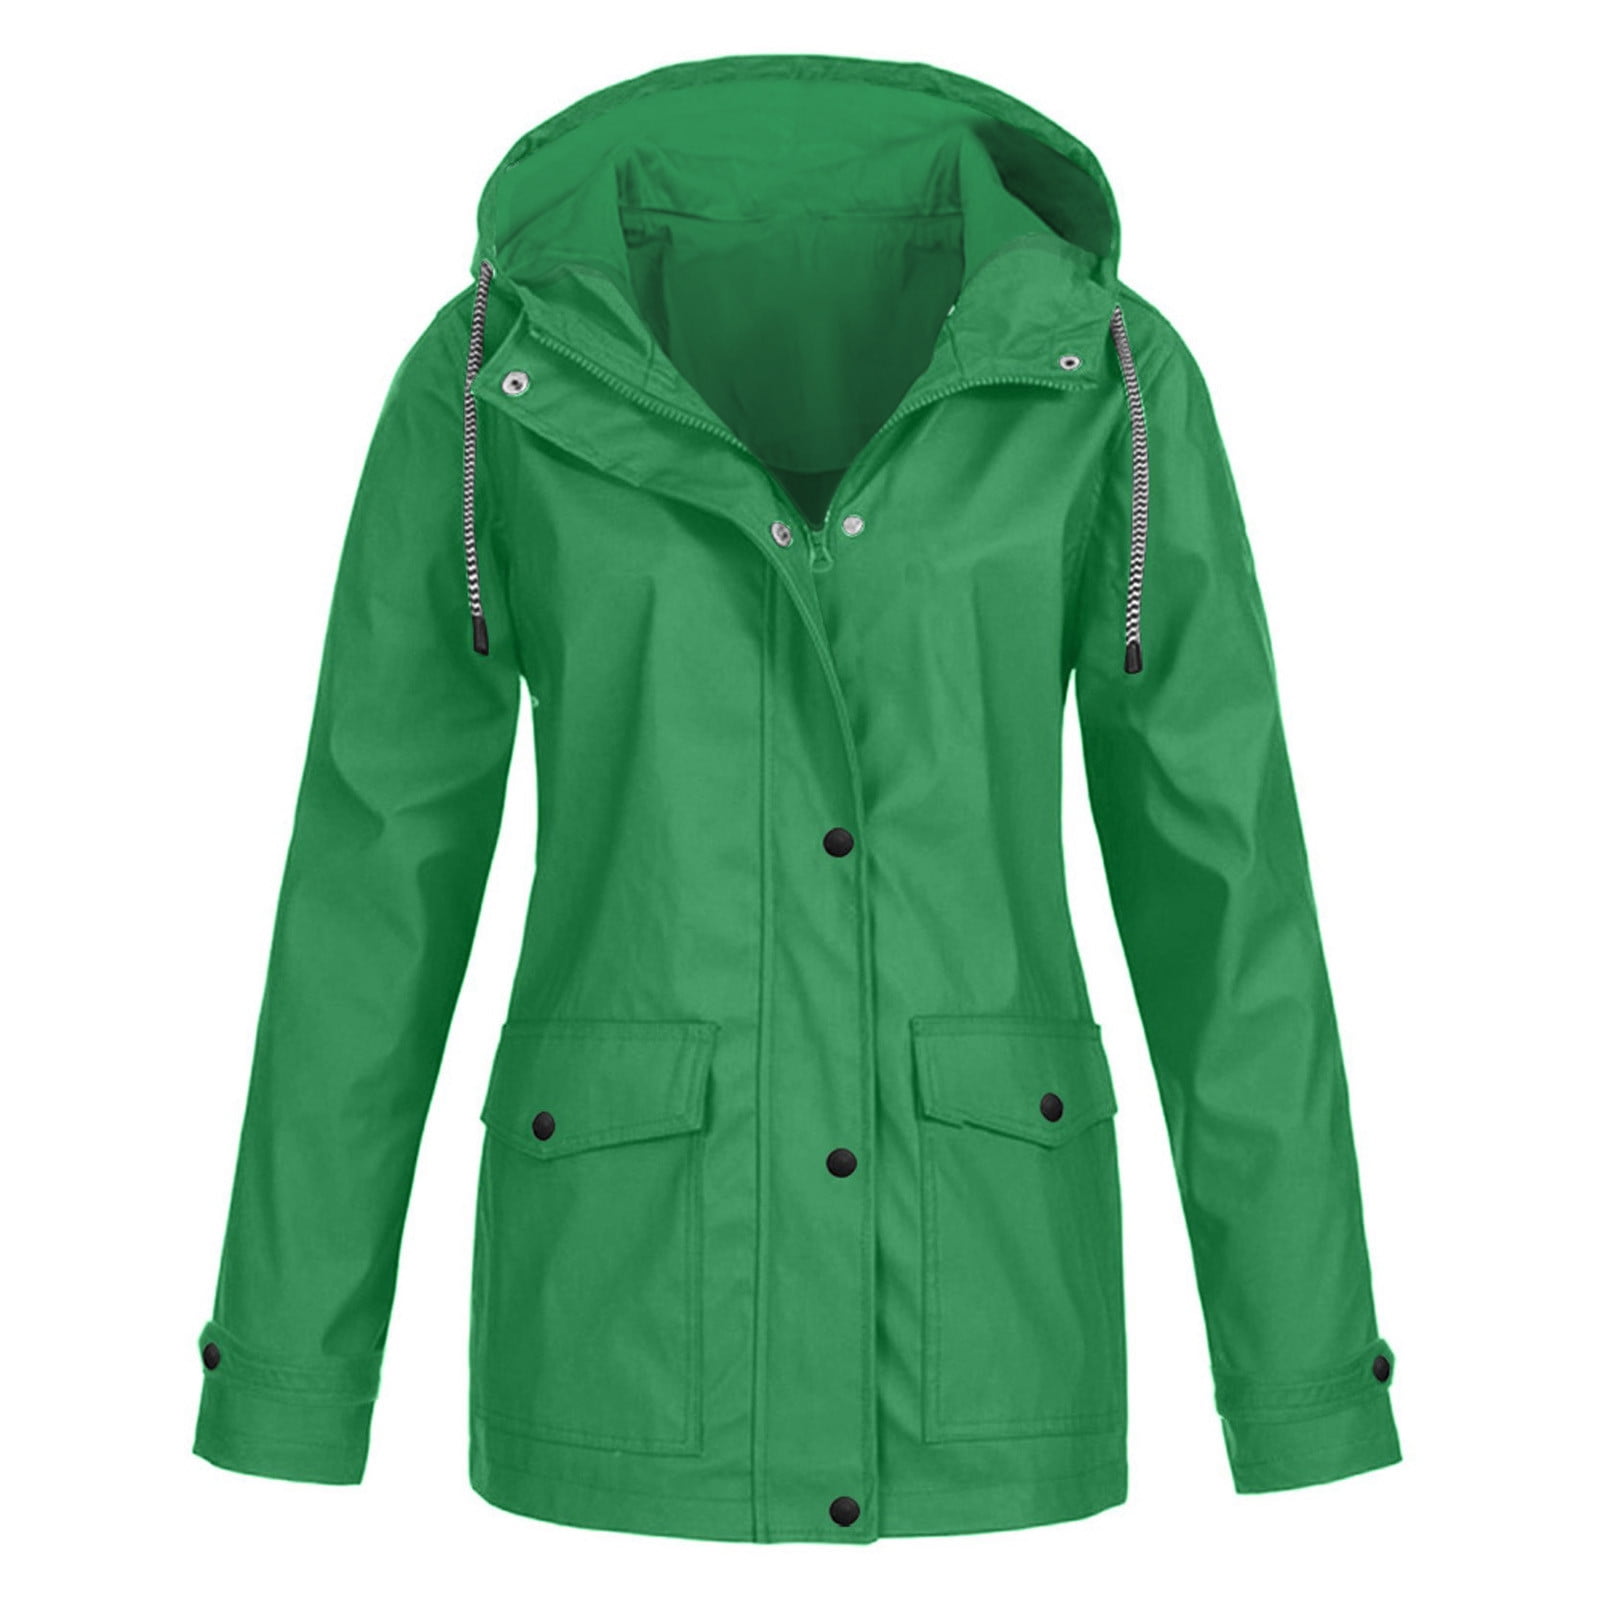 CEHVOM Women Solid Rain Jacket Outdoor Plus Size Waterproof Hooded ...